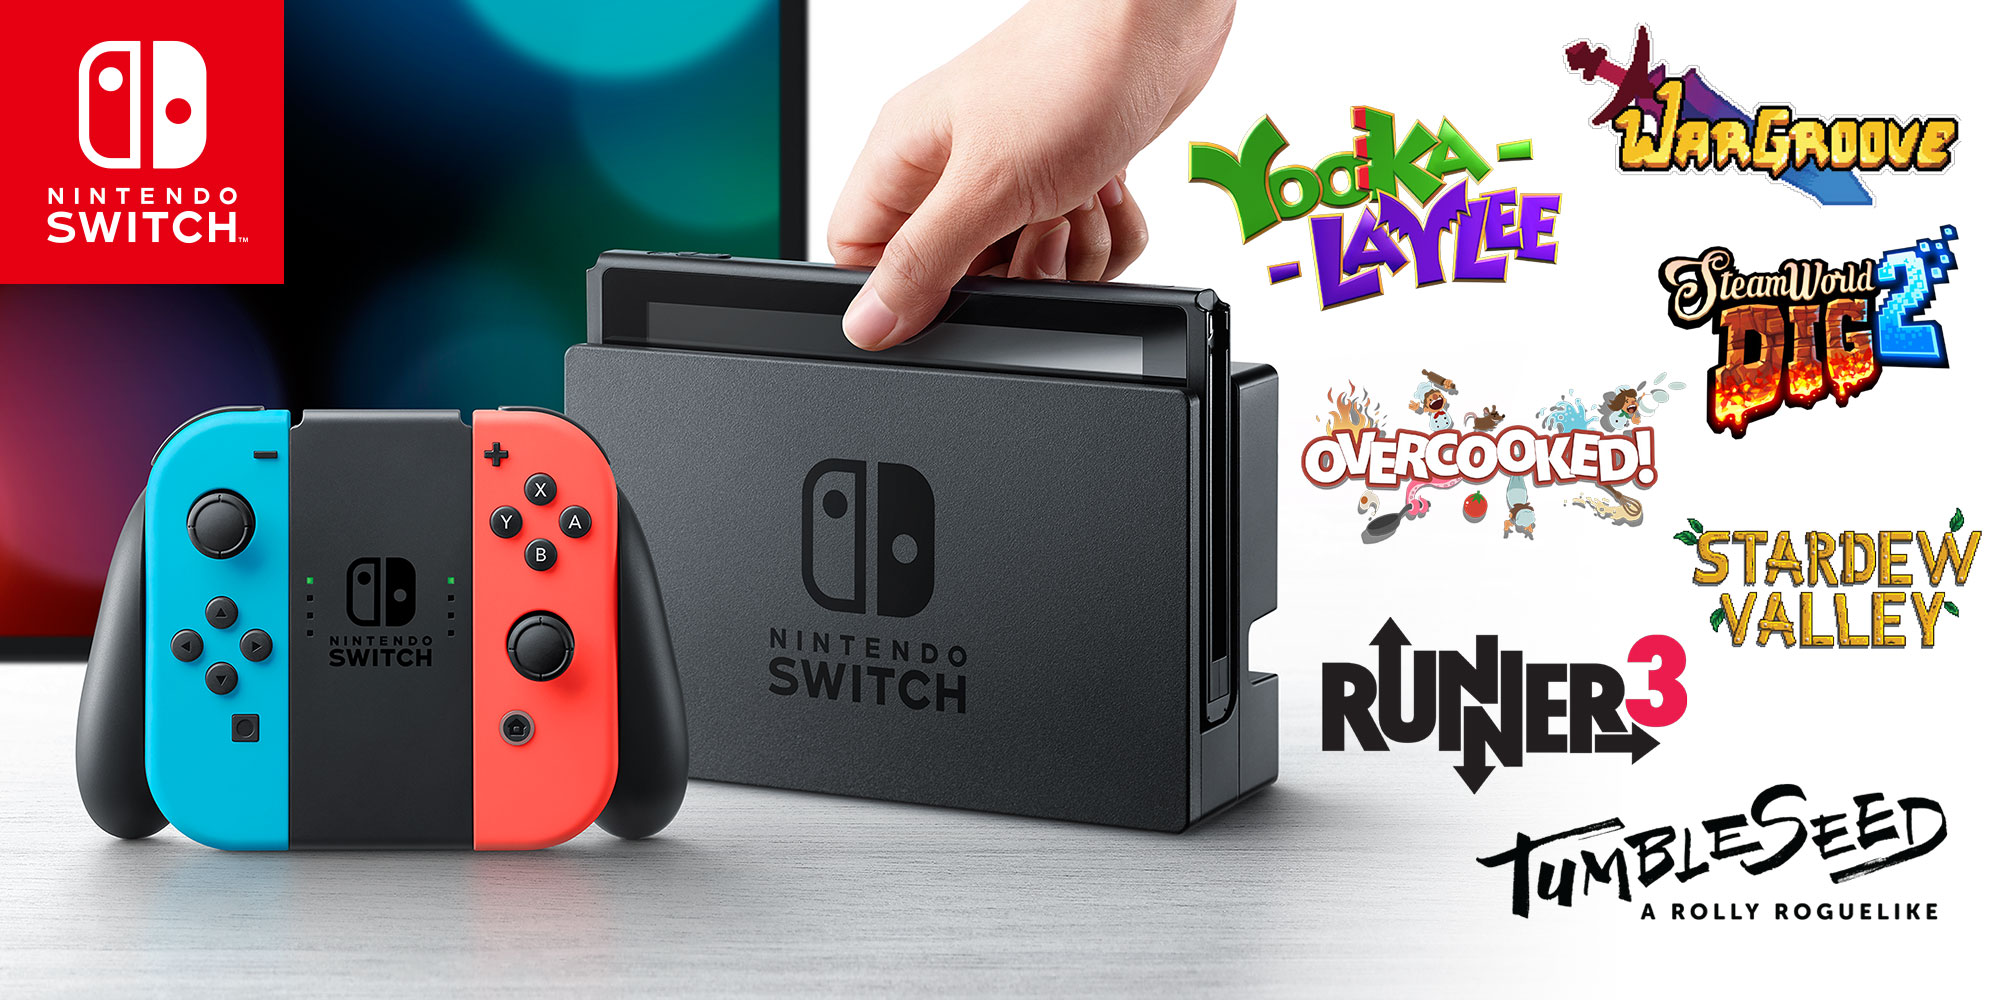 Nintendo revela nuevas colaboraciones y primeros títulos indie para Nintendo Switch en la Nintendo eShop